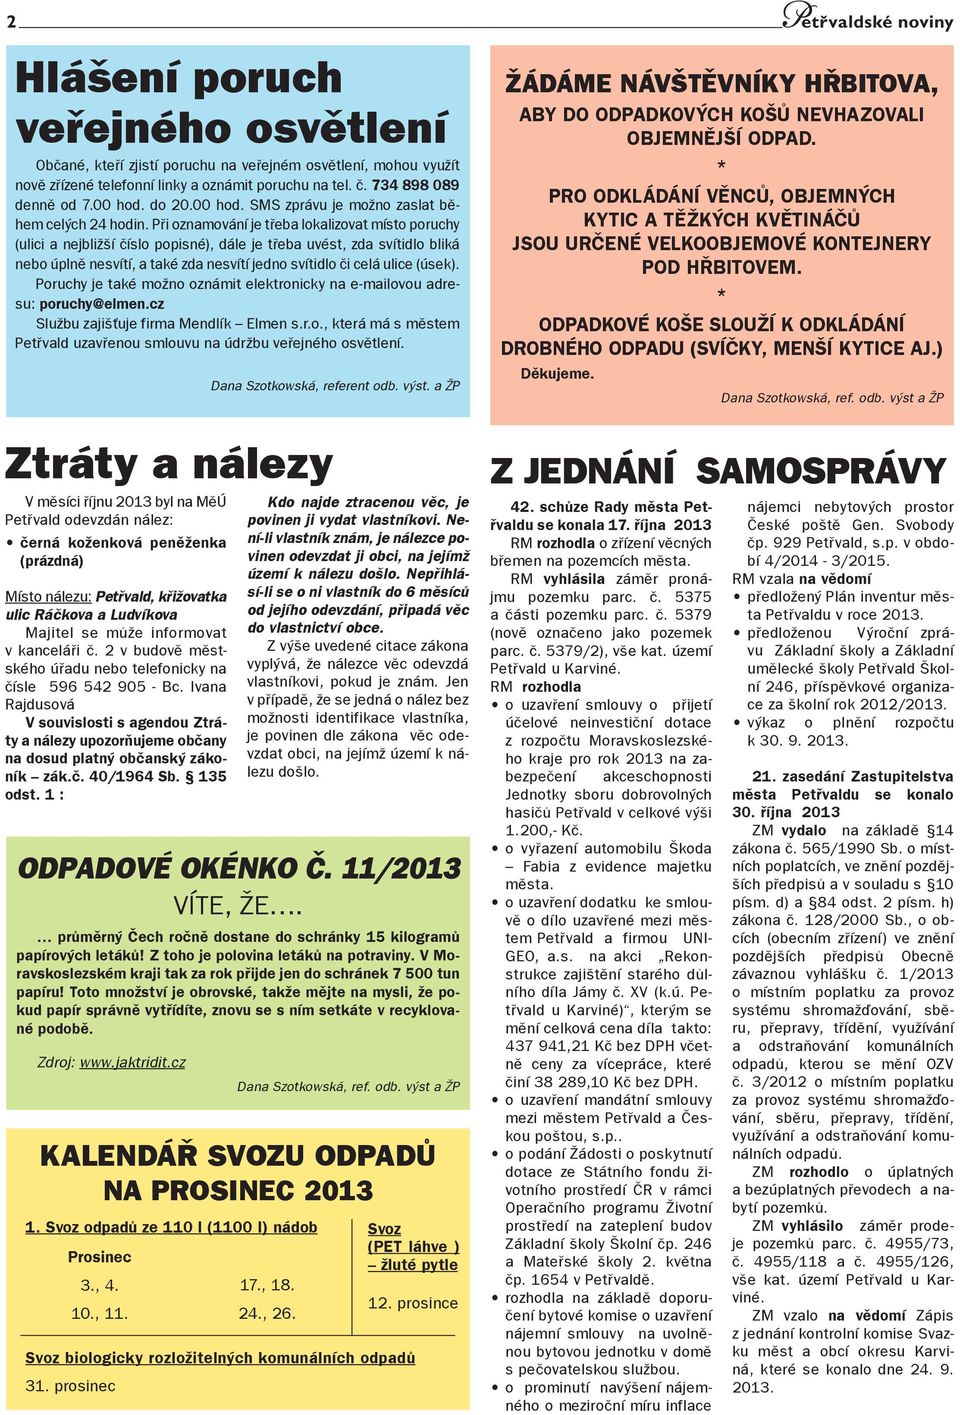 etřvaldské noviny Odevzdané obálky Volební účast v % - PDF Free Download